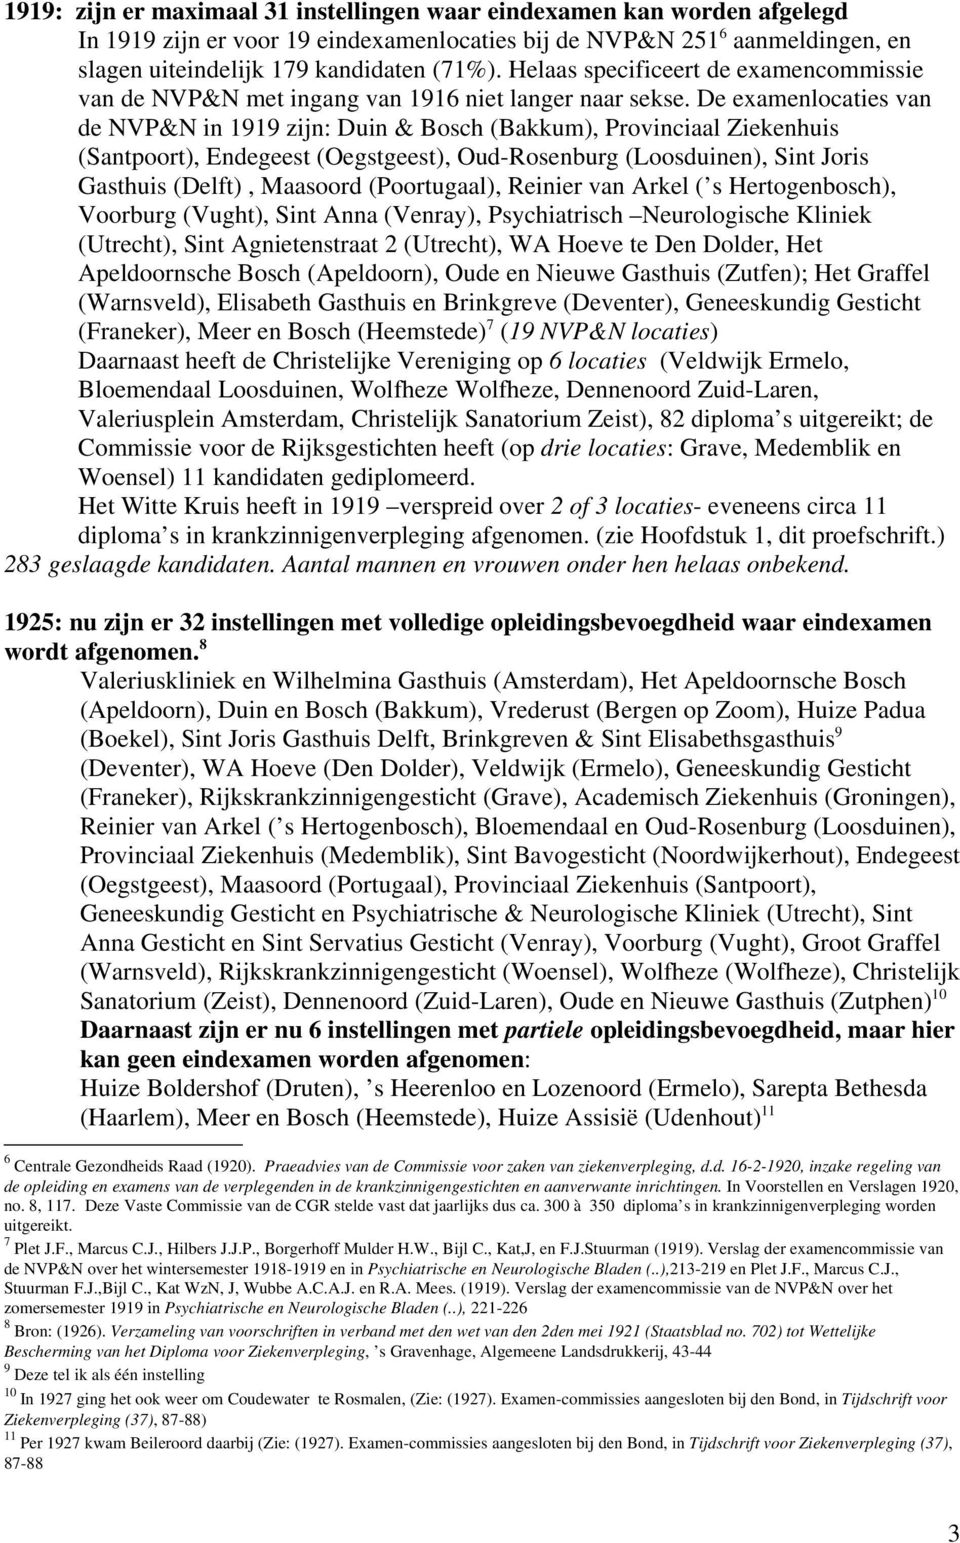 De examenlocaties van de NVP&N in 1919 zijn: Duin & Bosch (Bakkum), Provinciaal Ziekenhuis (Santpoort), Endegeest (Oegstgeest), Oud-Rosenburg (Loosduinen), Sint Joris Gasthuis (Delft), Maasoord